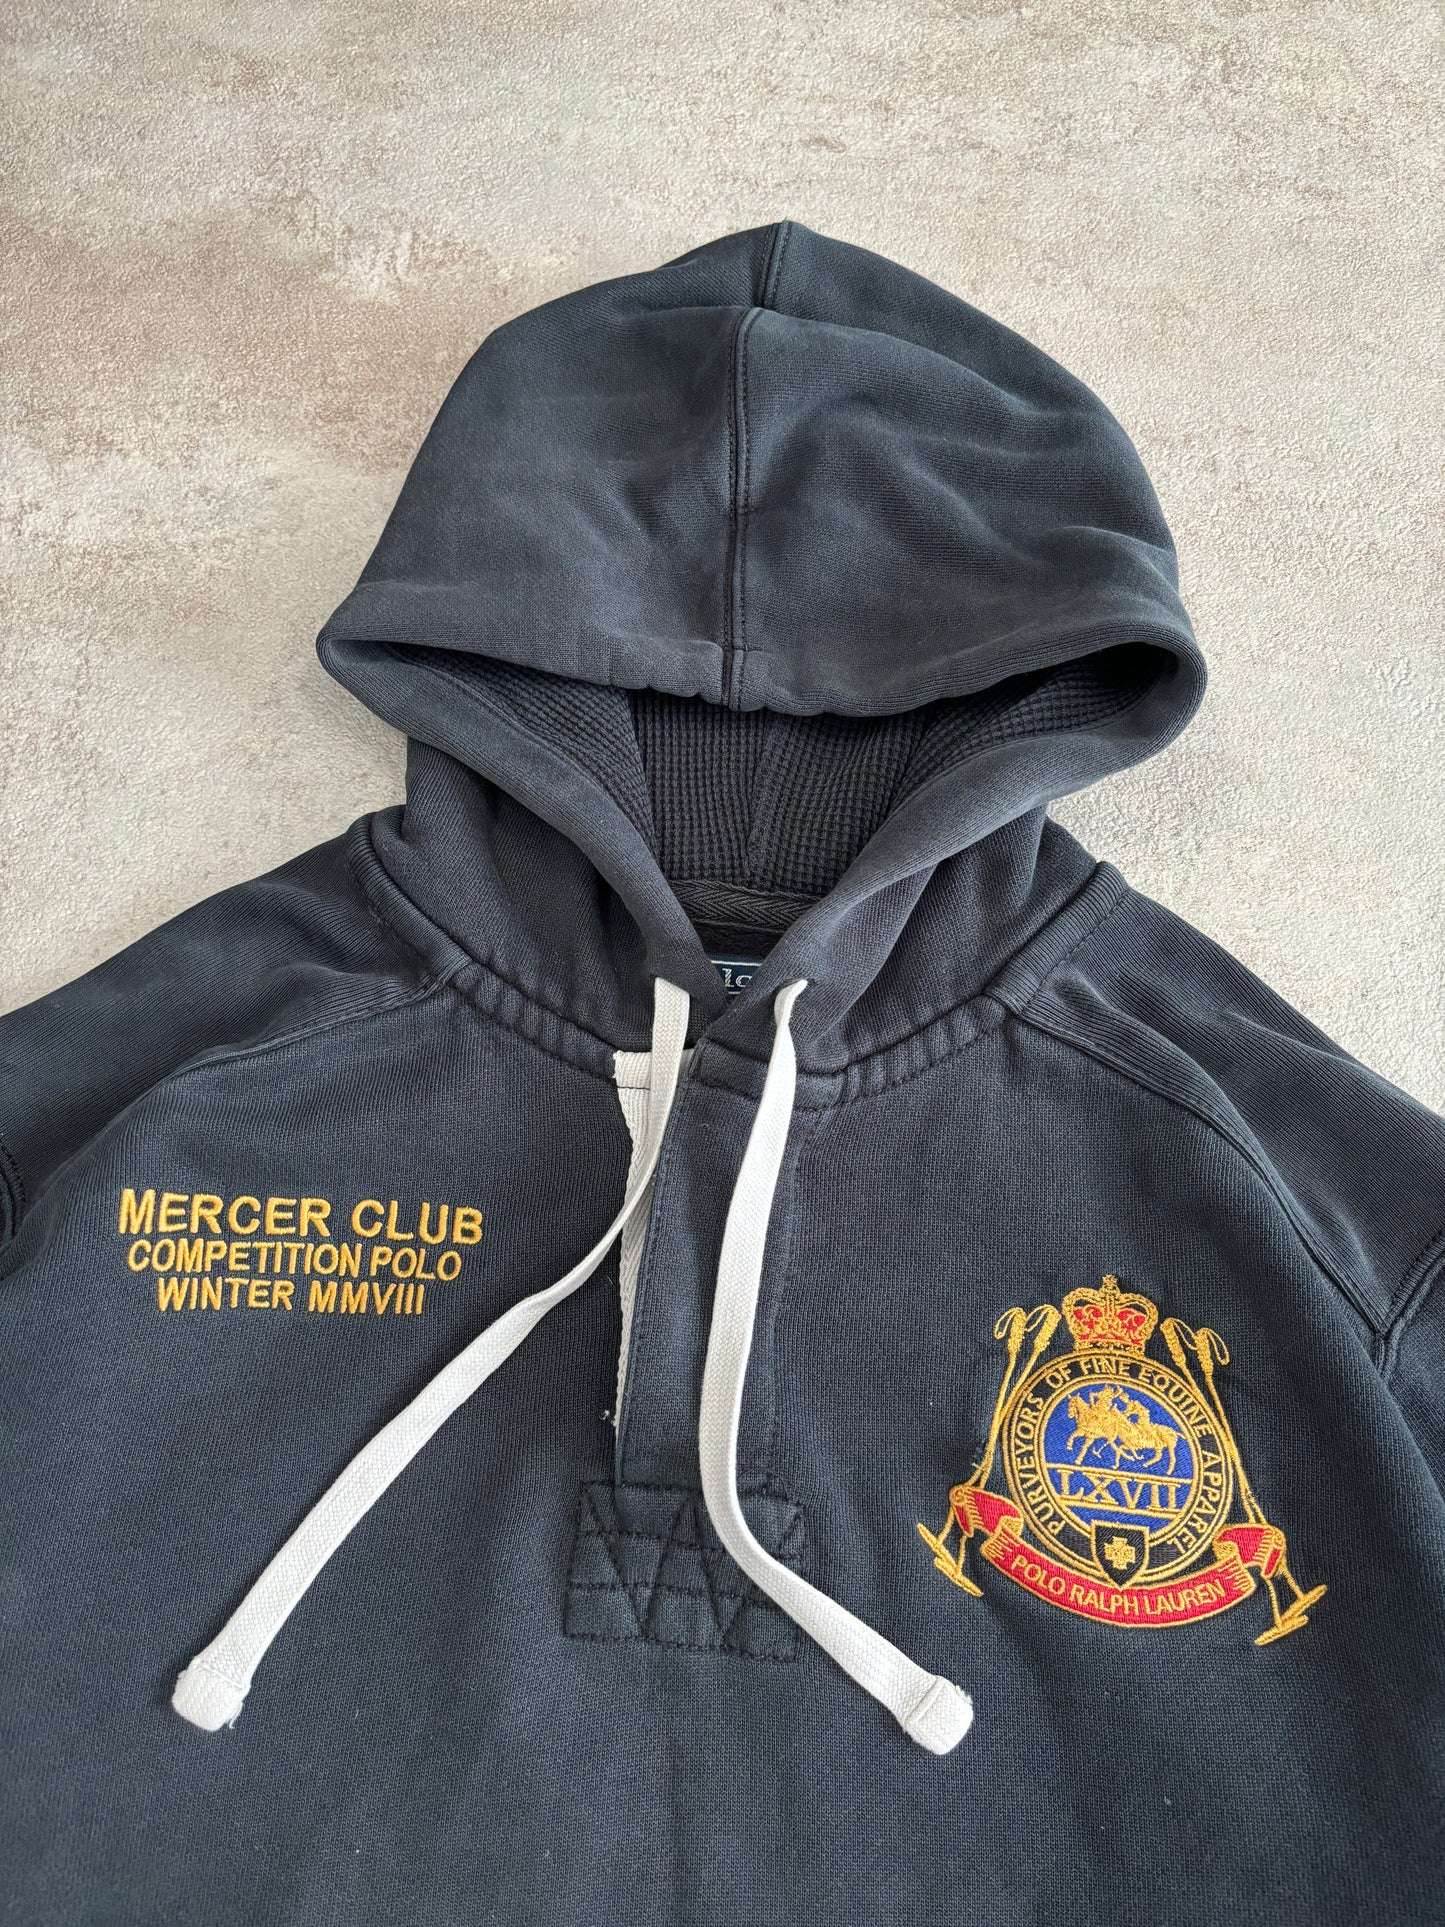 Hoodie Polo Ralph Lauren ‘Mercer Club’ 00s Vintage - M